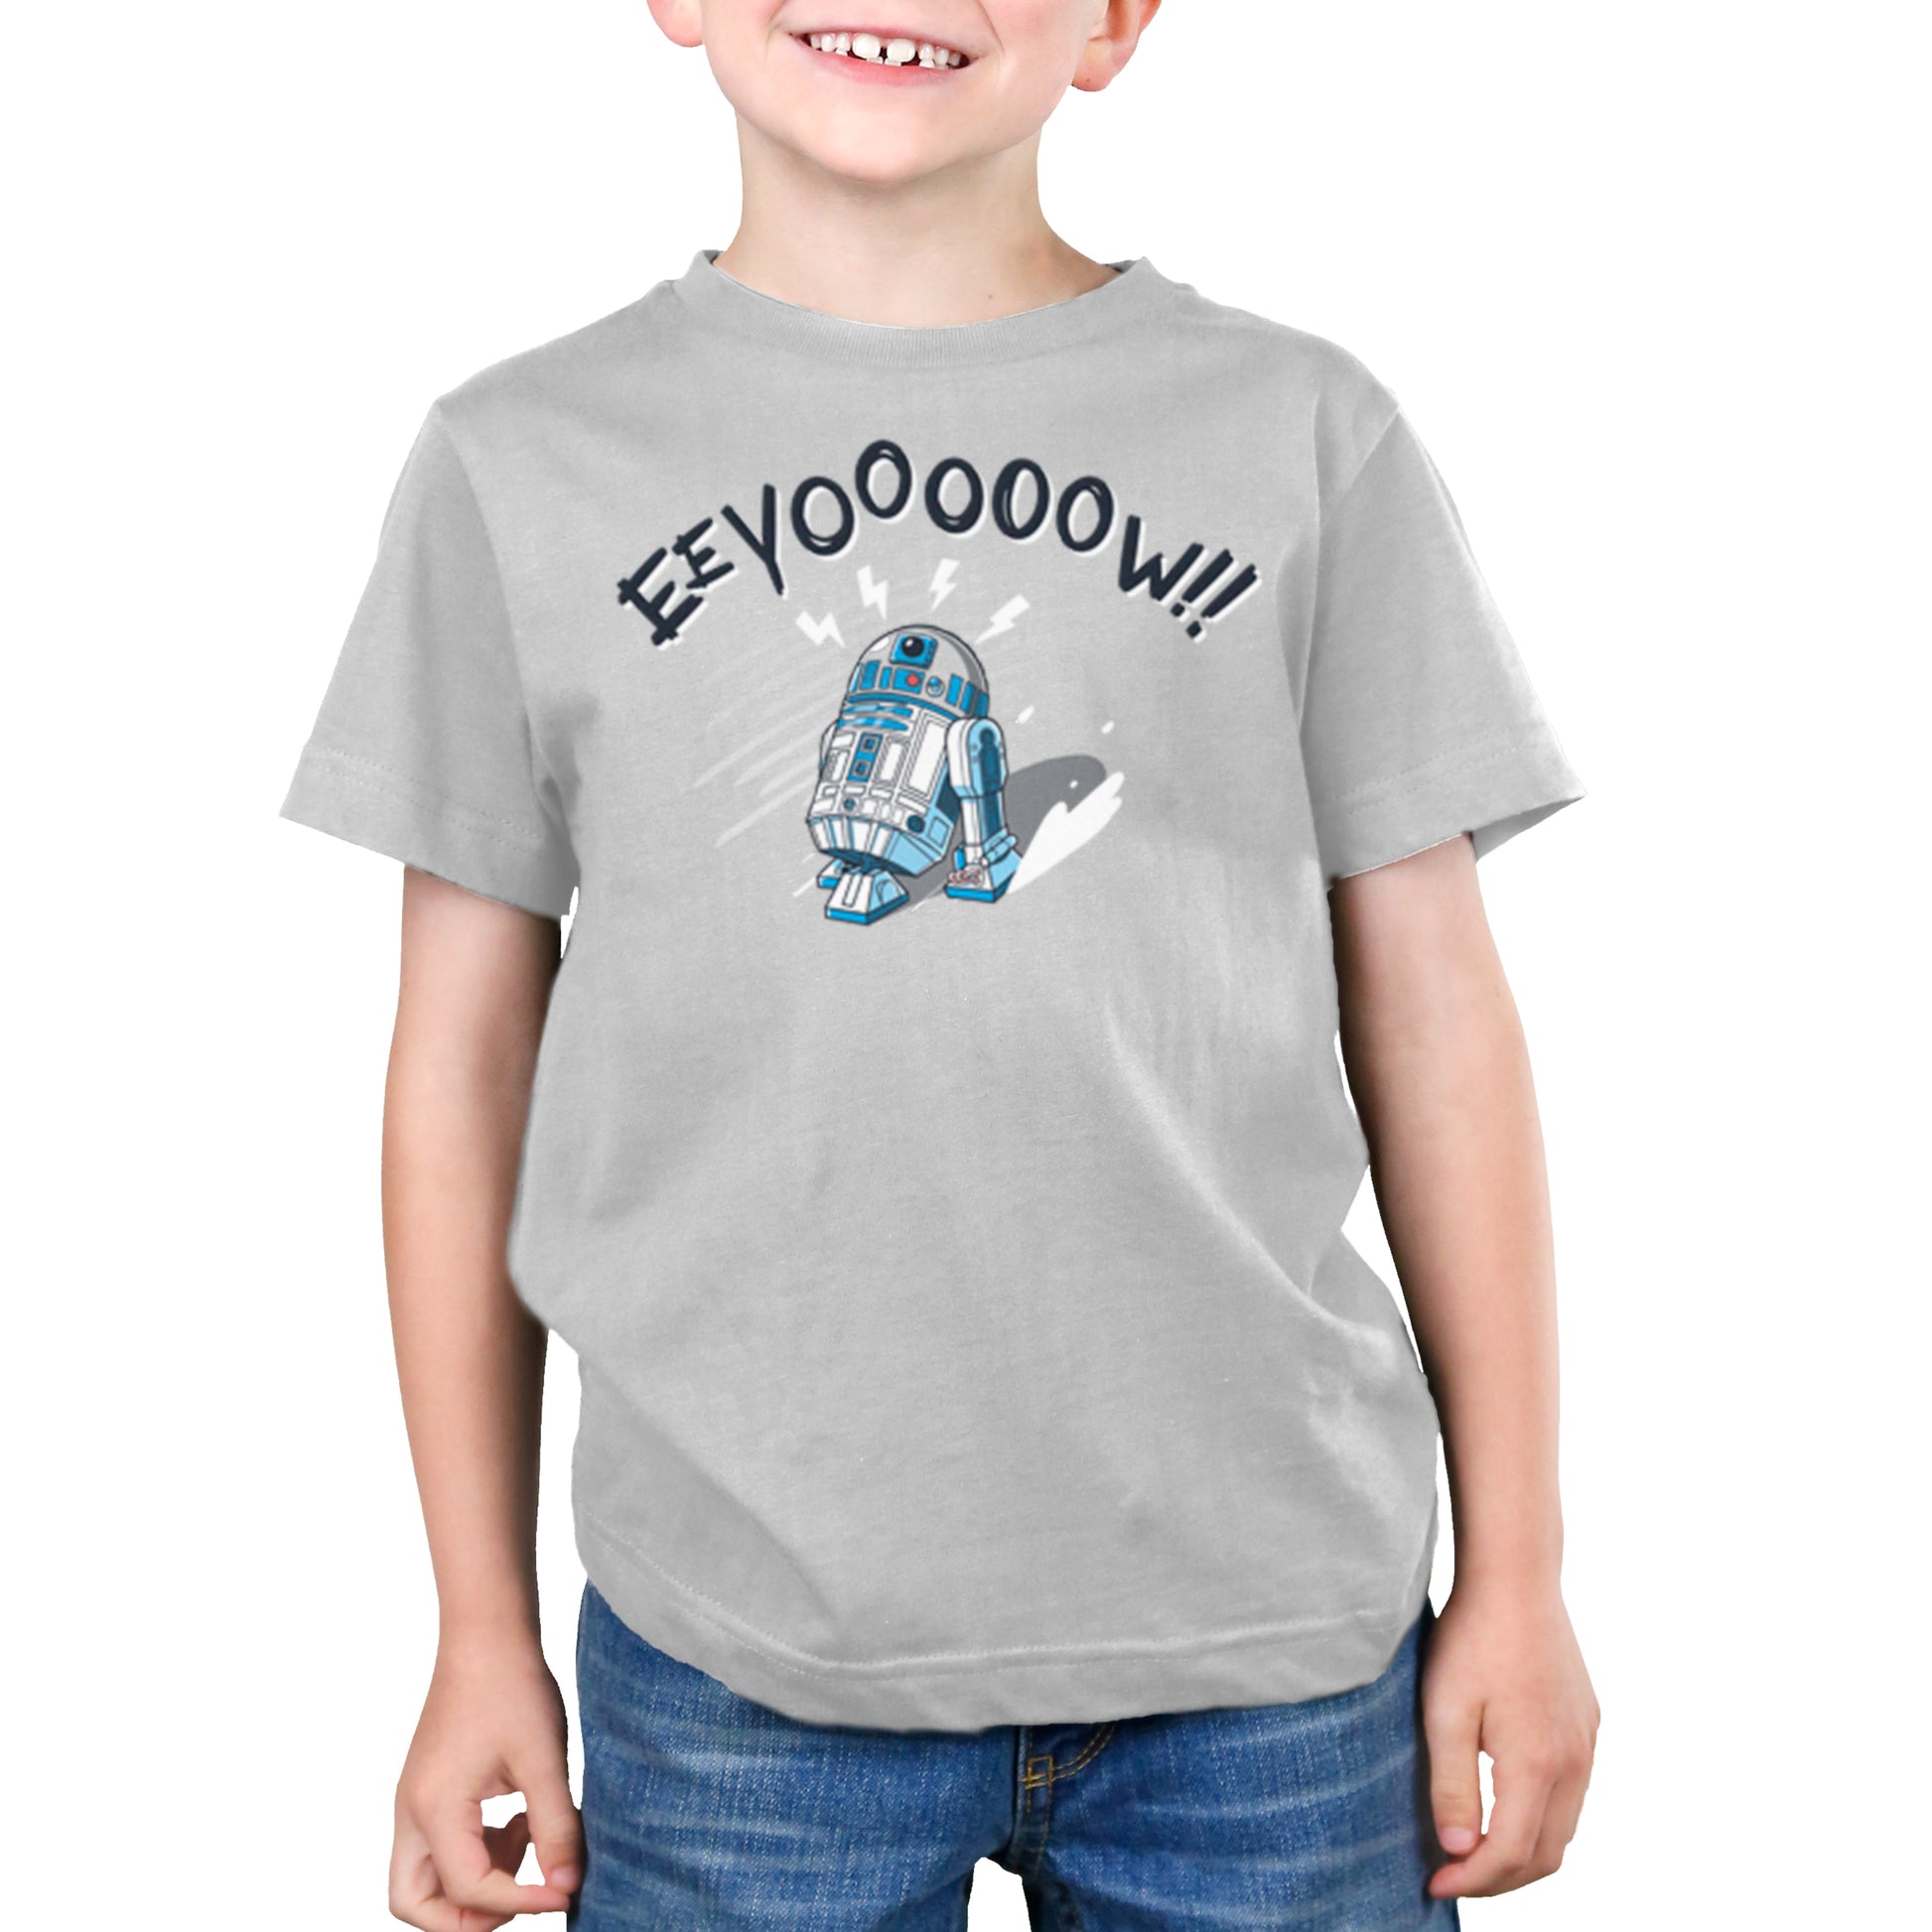 A young boy wearing a Star Wars Eeyooooow! T-shirt.